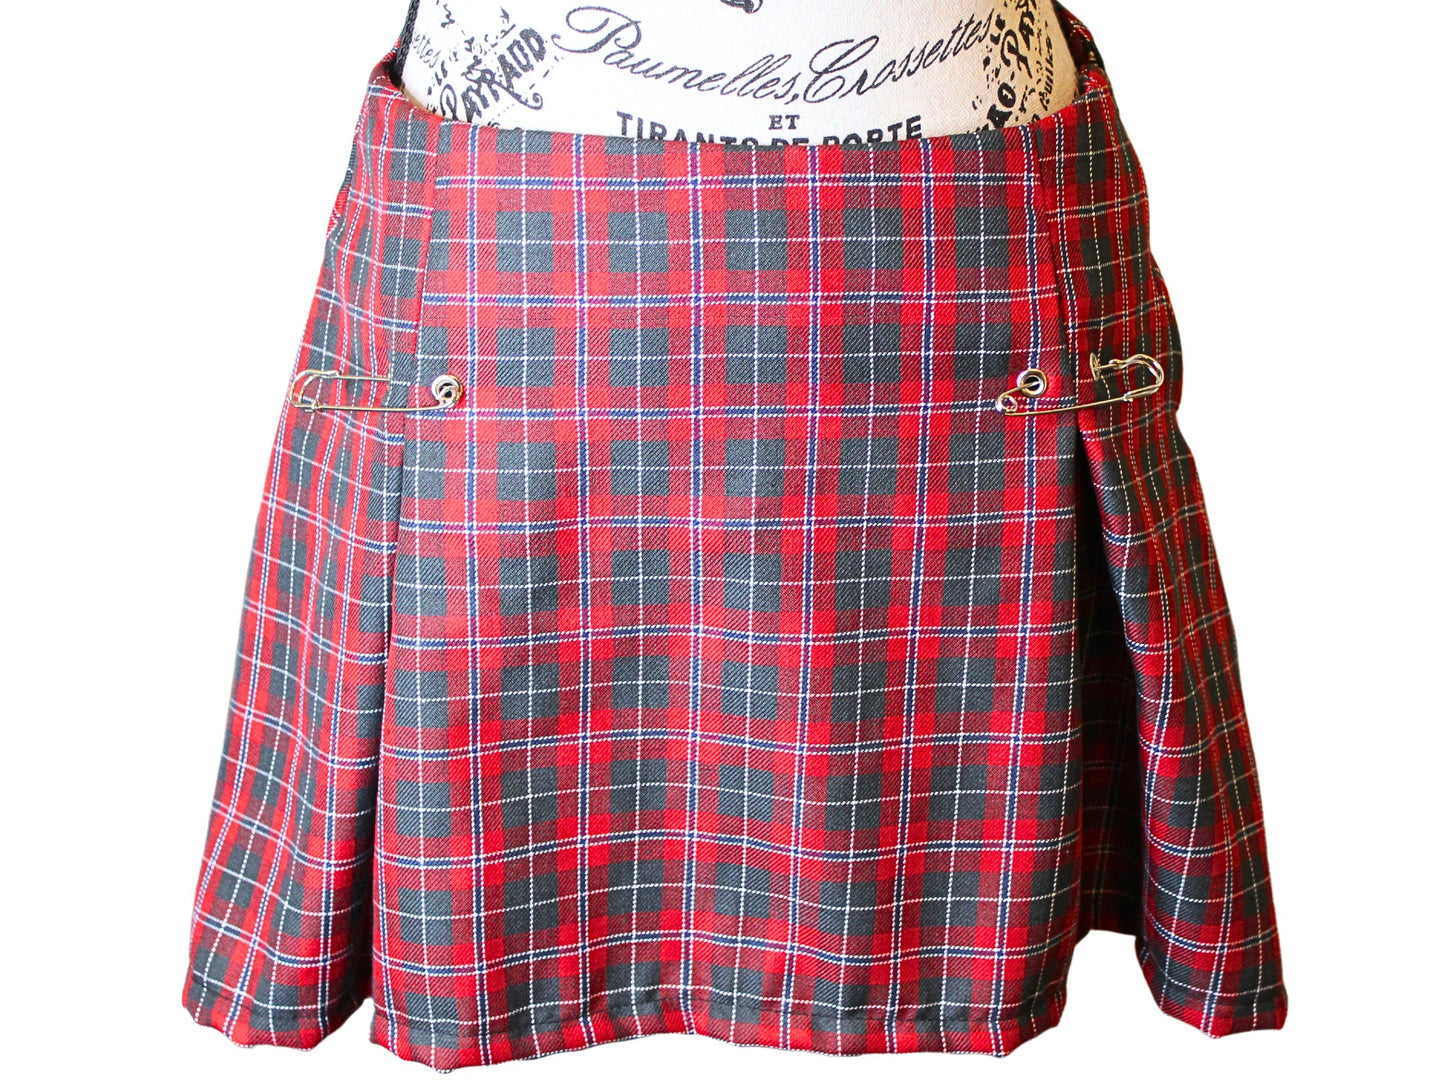 The VM Kilt Pin Skirt